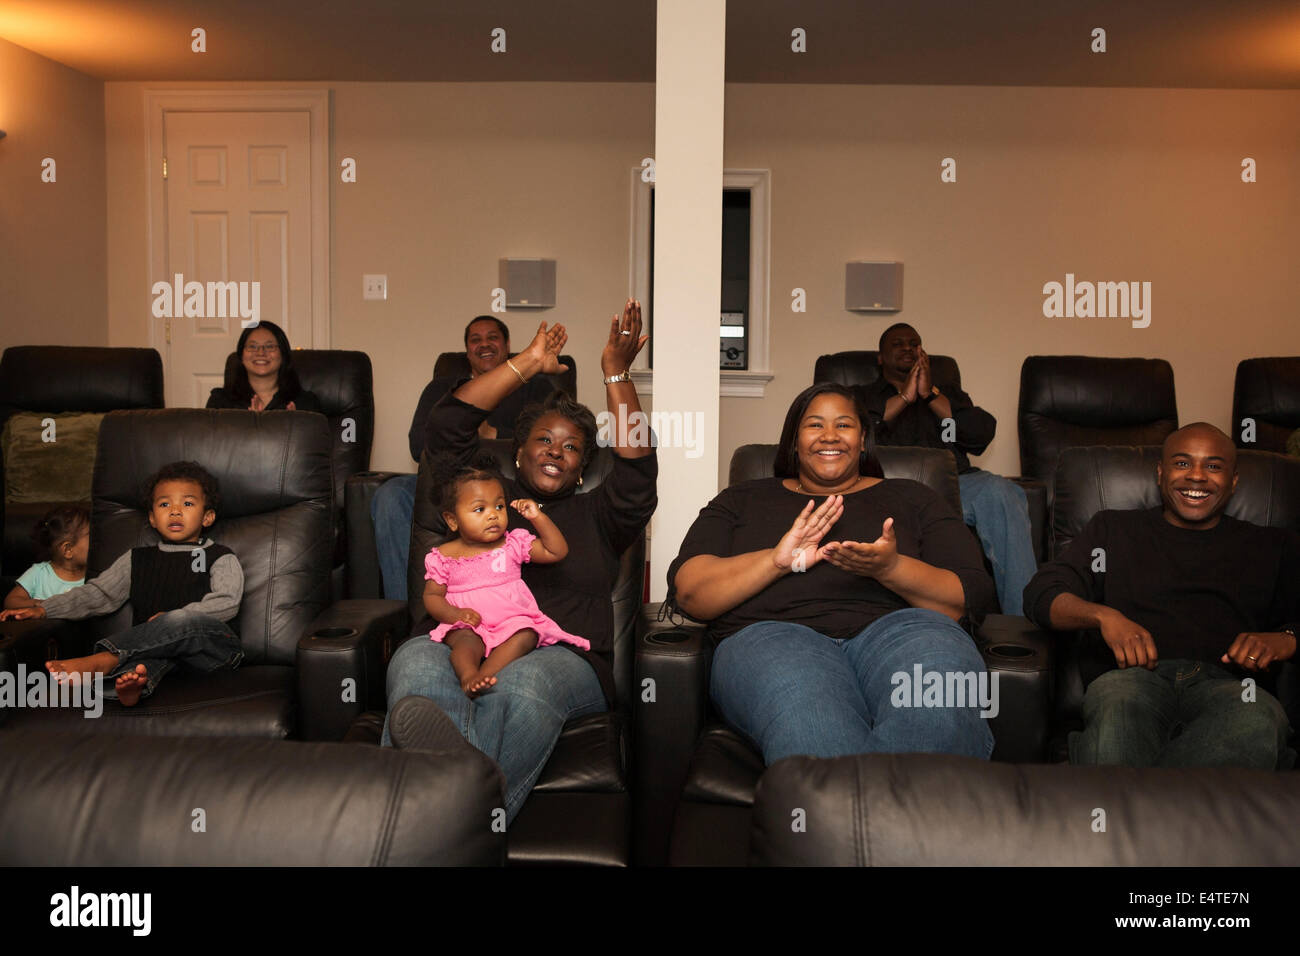 Regarder la vidéo de la famille élargie dans Home Theatre Banque D'Images